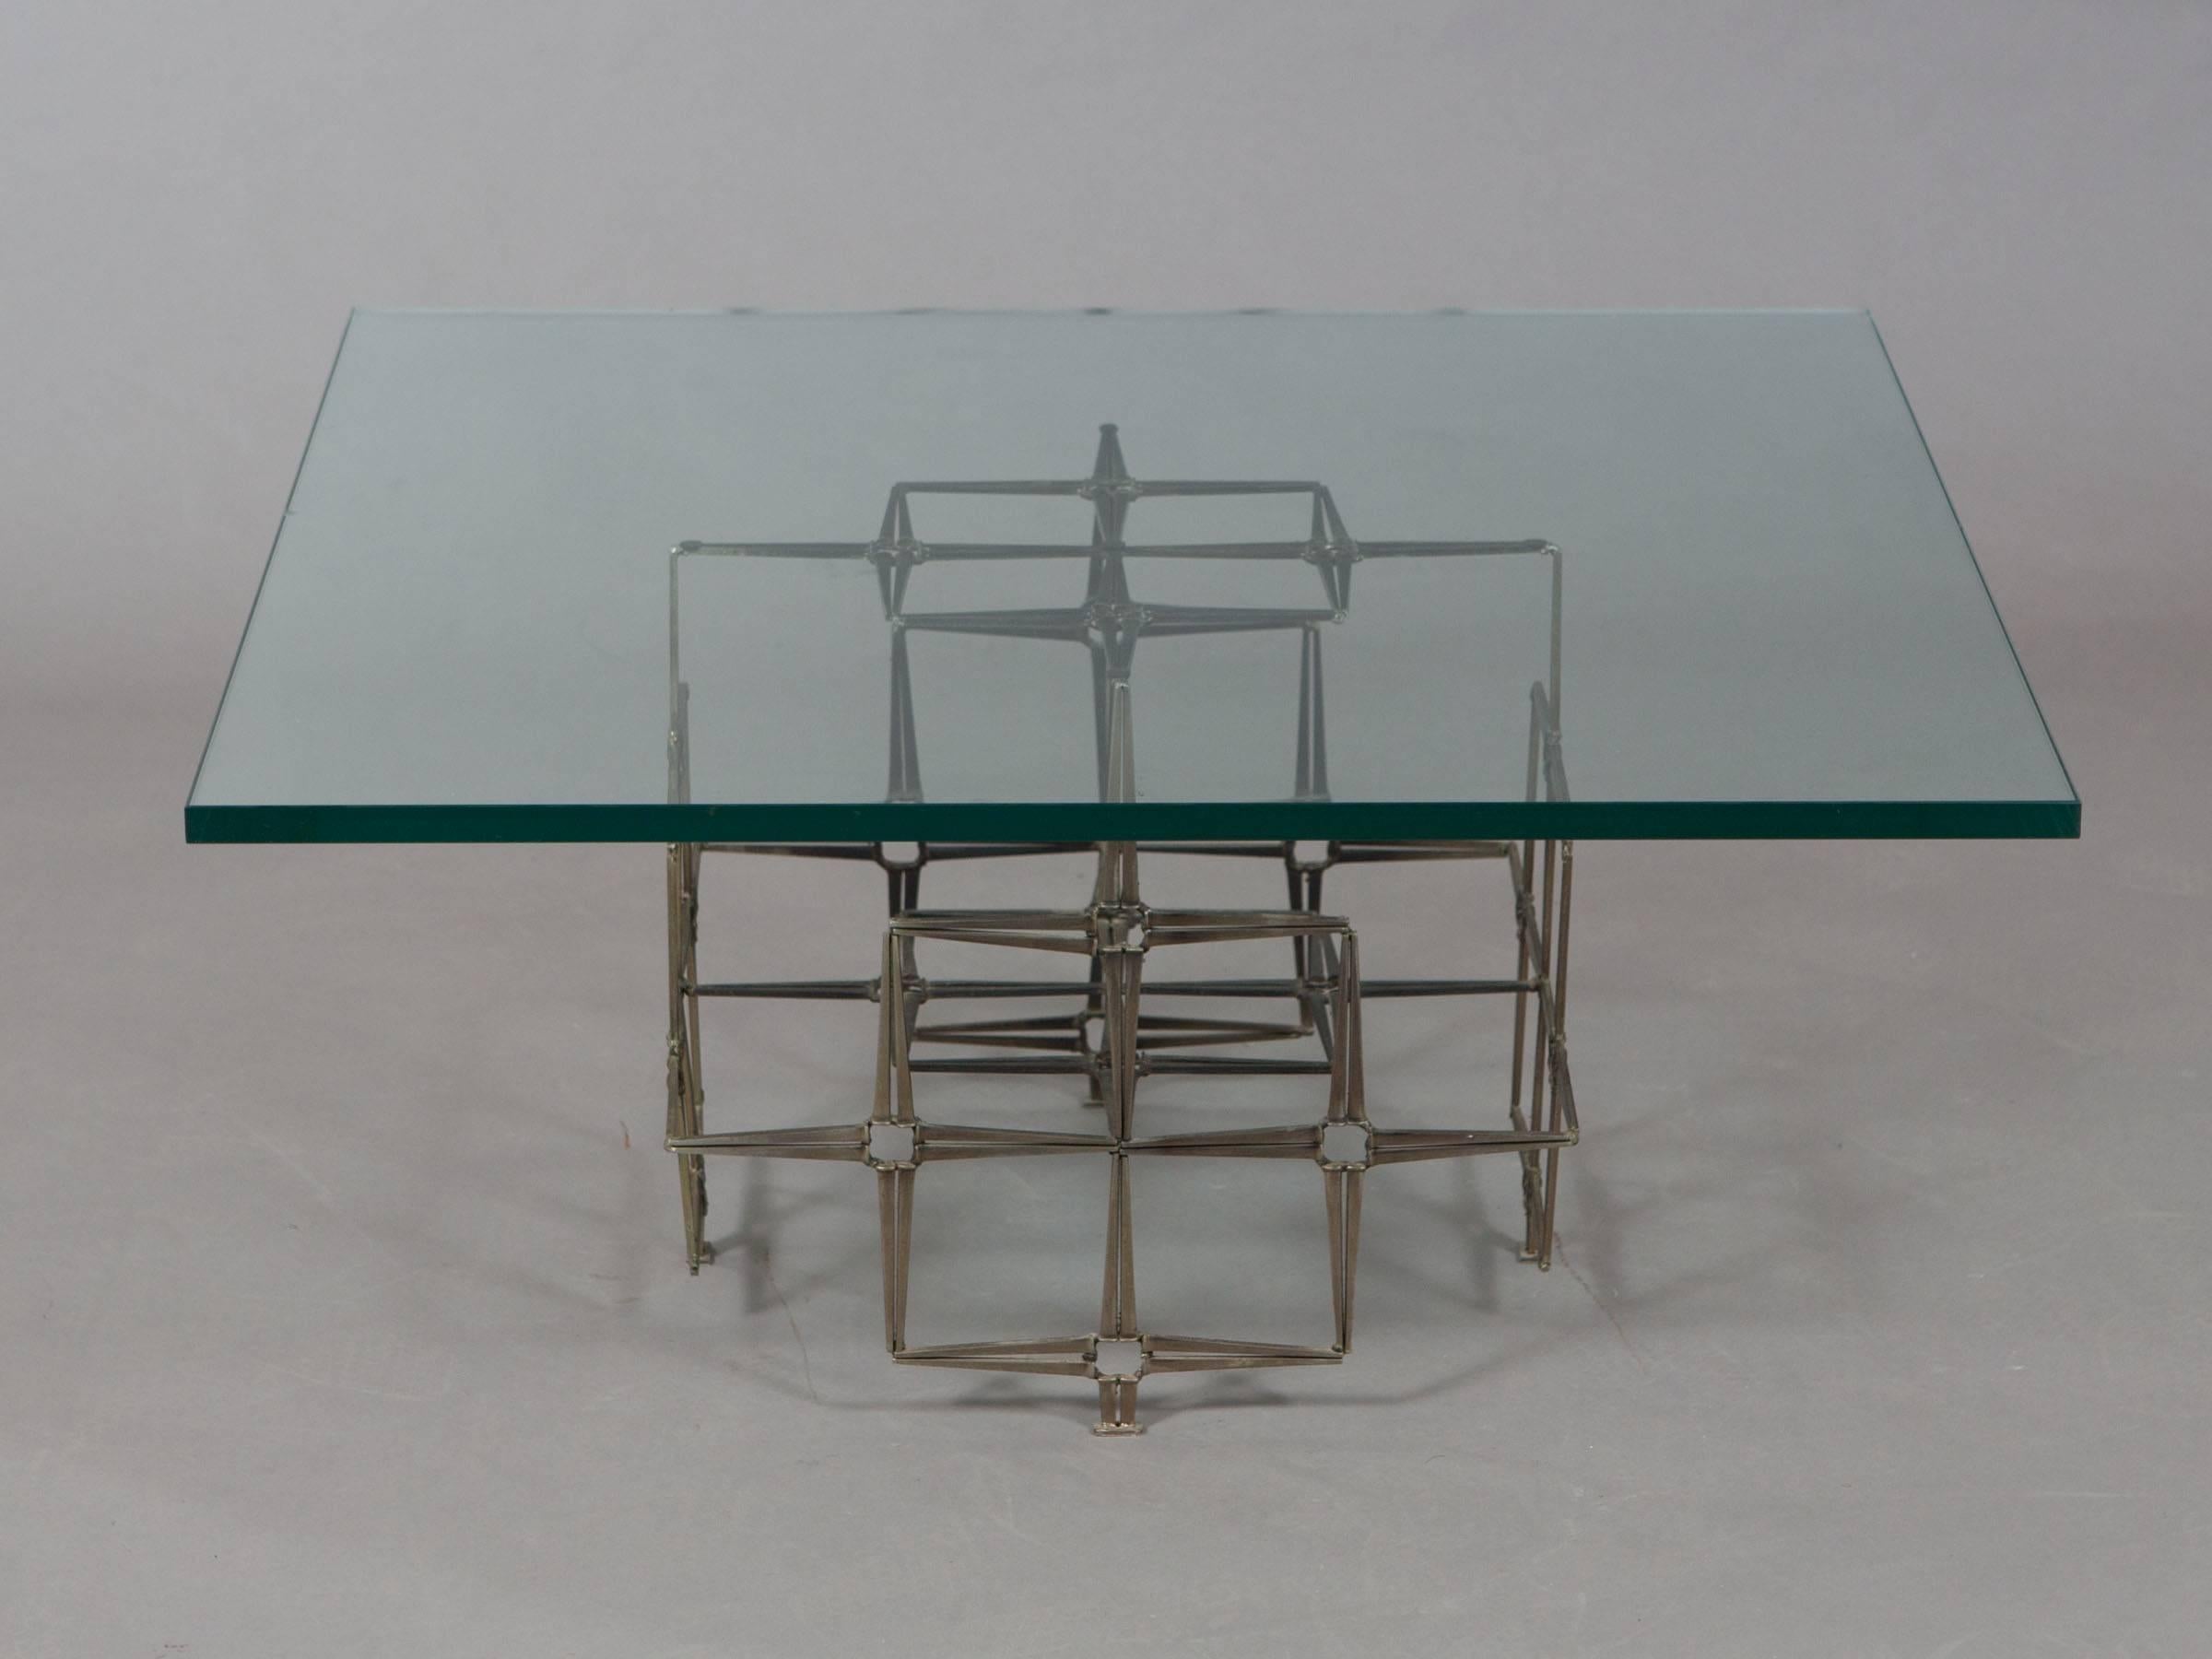 Handgefertigter Tisch aus geschweißten Stahlmauernägeln mit einer dicken Glasplatte im Stil von Paul Evans. Der geometrisch geformte Sockel weist eine schöne Patina auf. Die Basis misst 18,75